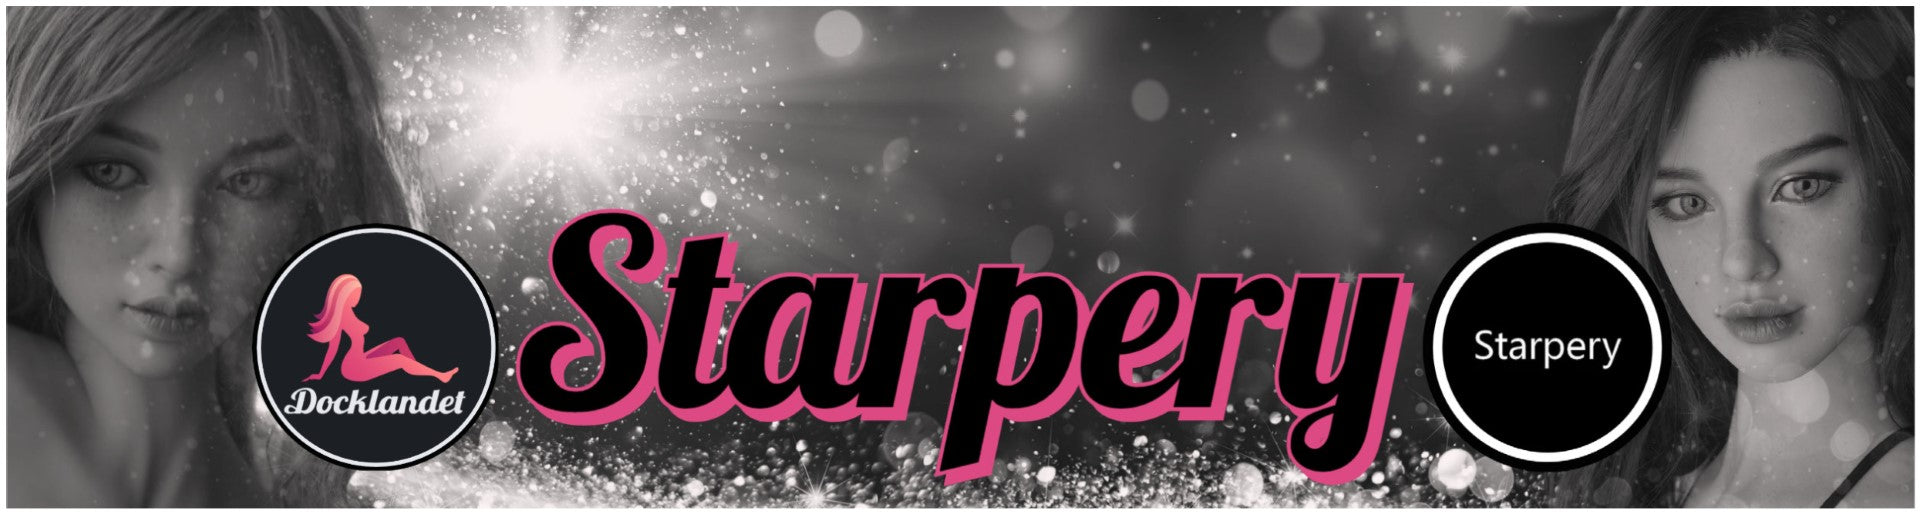 Sexdocka från Starpery. Bilden visar rubriken Starpery och Starpery's och Docklandets logotyper. Om du är ute efter en sexdocka från Starpery hittar du den hos Docklandet!